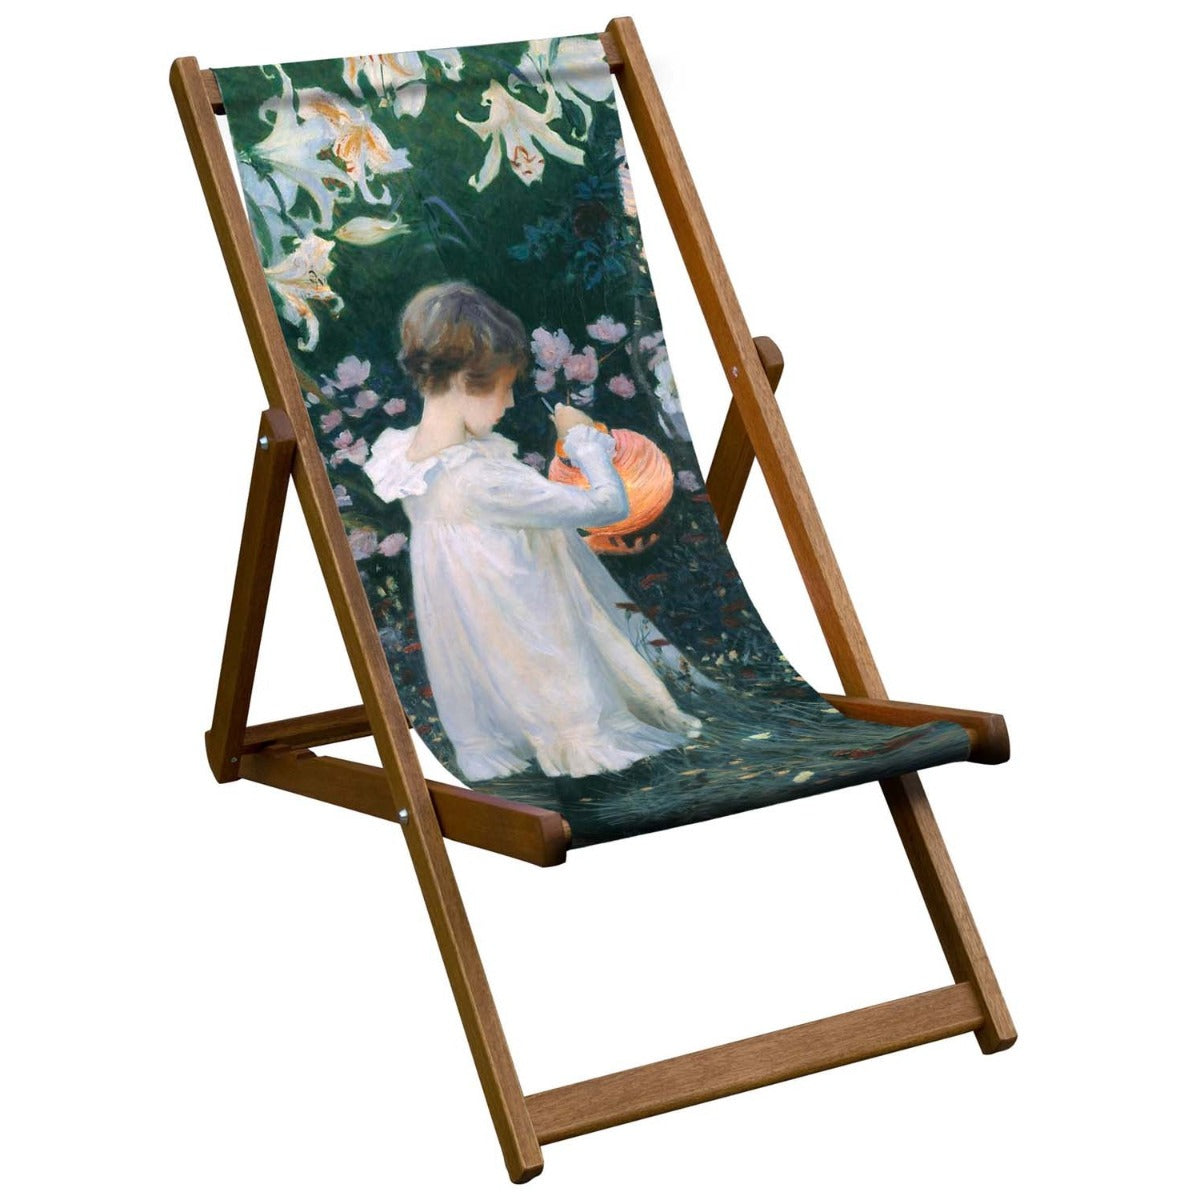 Vintage Inspired Wooden Deckchair- 'Carnation, Lily, Lily, Rose'- John Singer Sargent